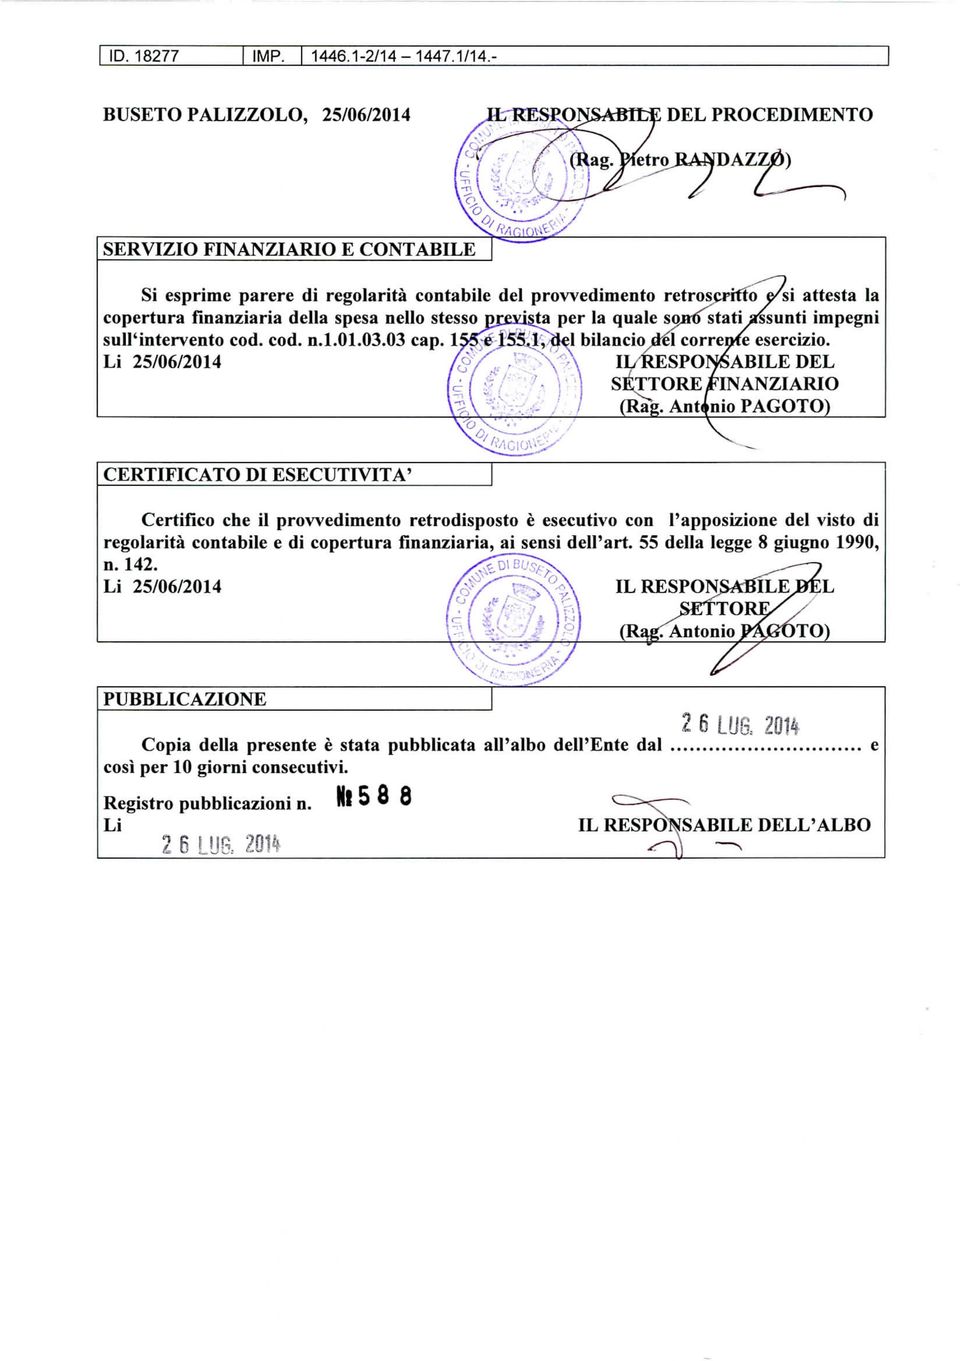 Li 25/06/2014 > II/RESPONSABILE DEL SETTORE FINANZIARIO (Rag. Antonio PAGOTO) CERTIFICATO DI ESECUTIVITÀ!